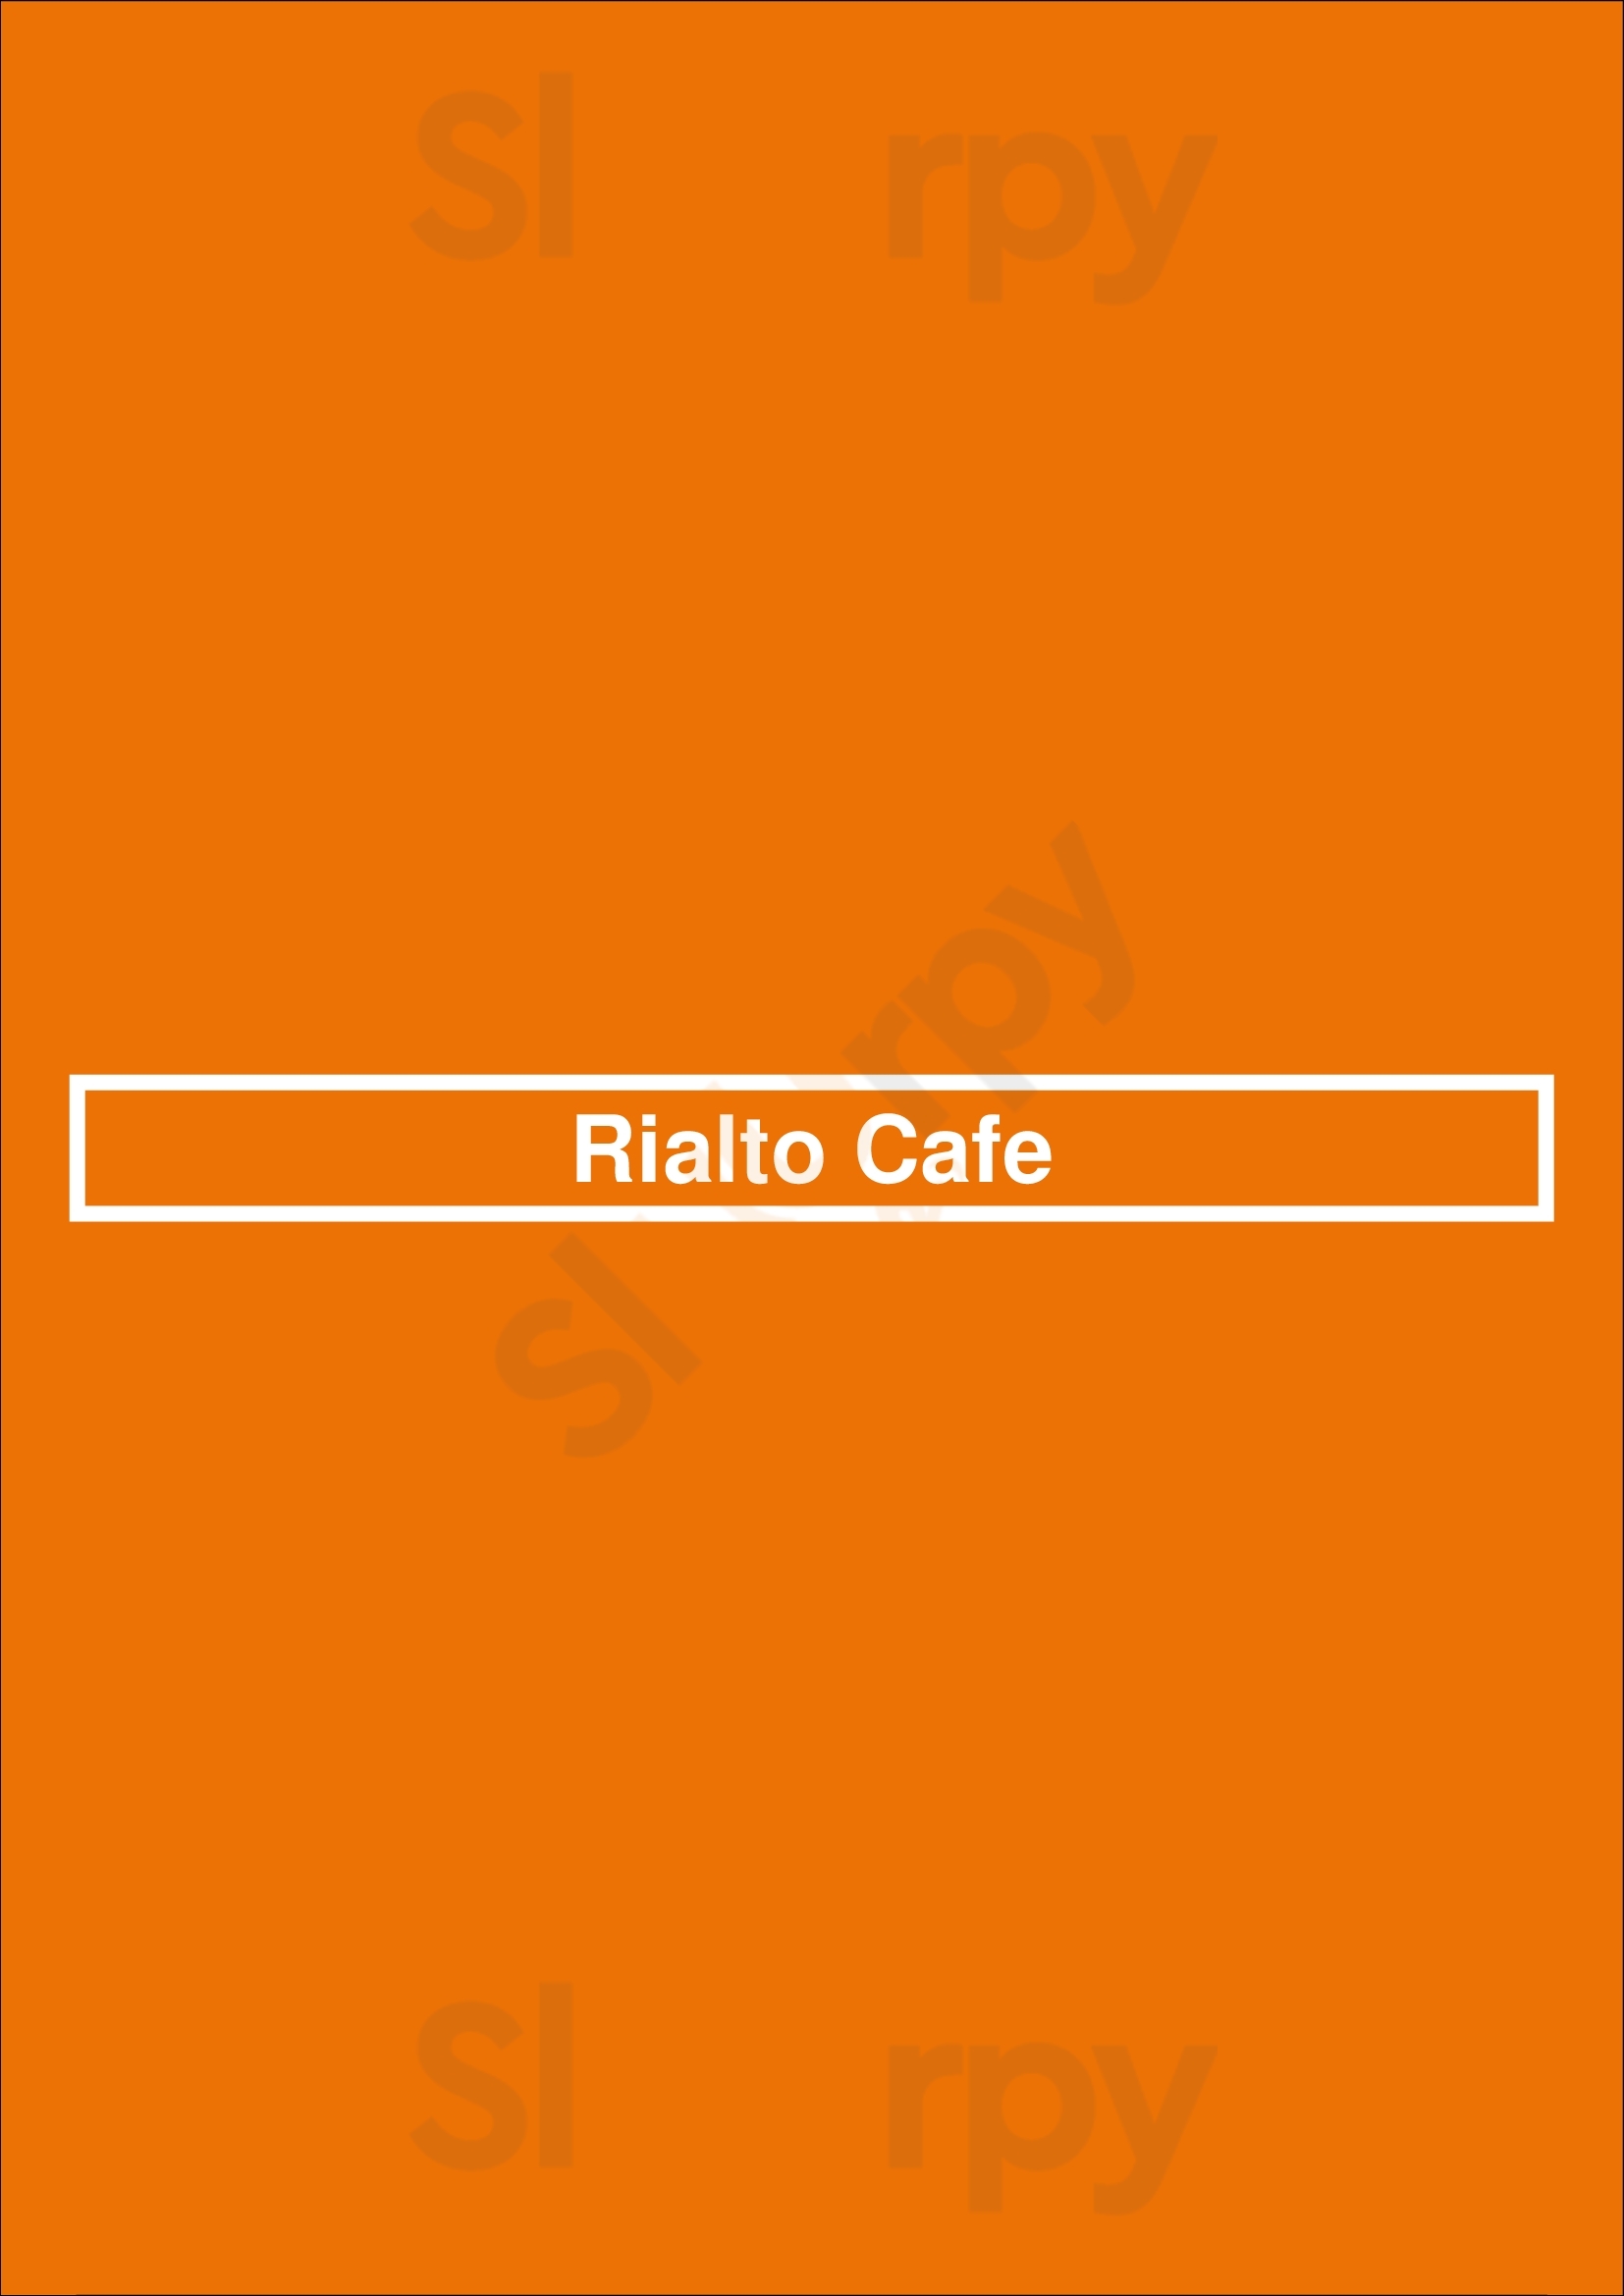 Rialto Cafe Denver Menu - 1